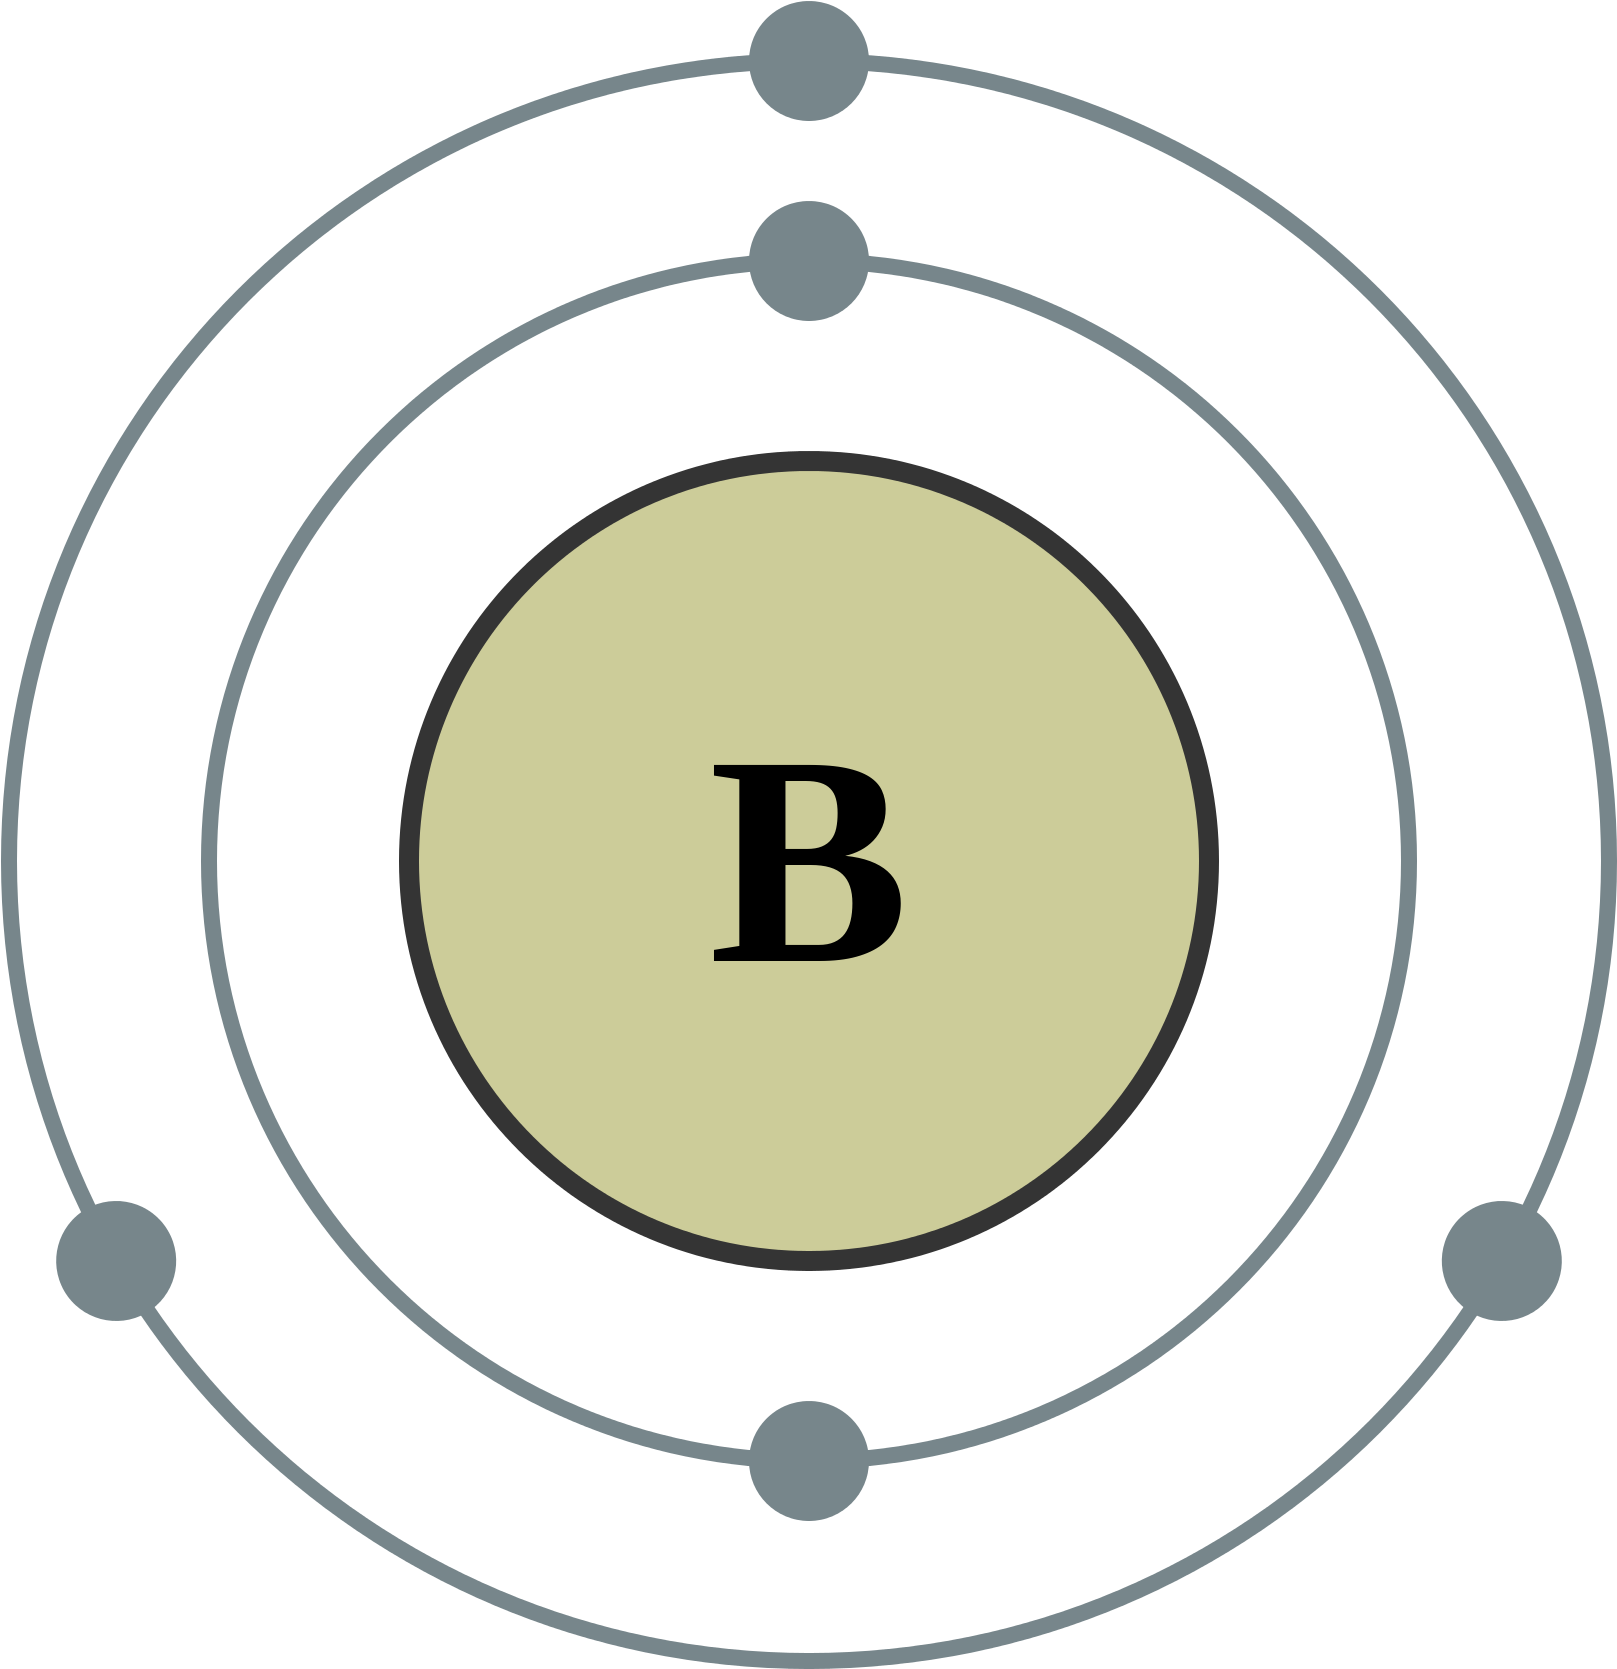 Bohr Diagram Boron Wiring Diagram U2022 Rh Championapp - Bohr Diagram For Boron (2000x2000)